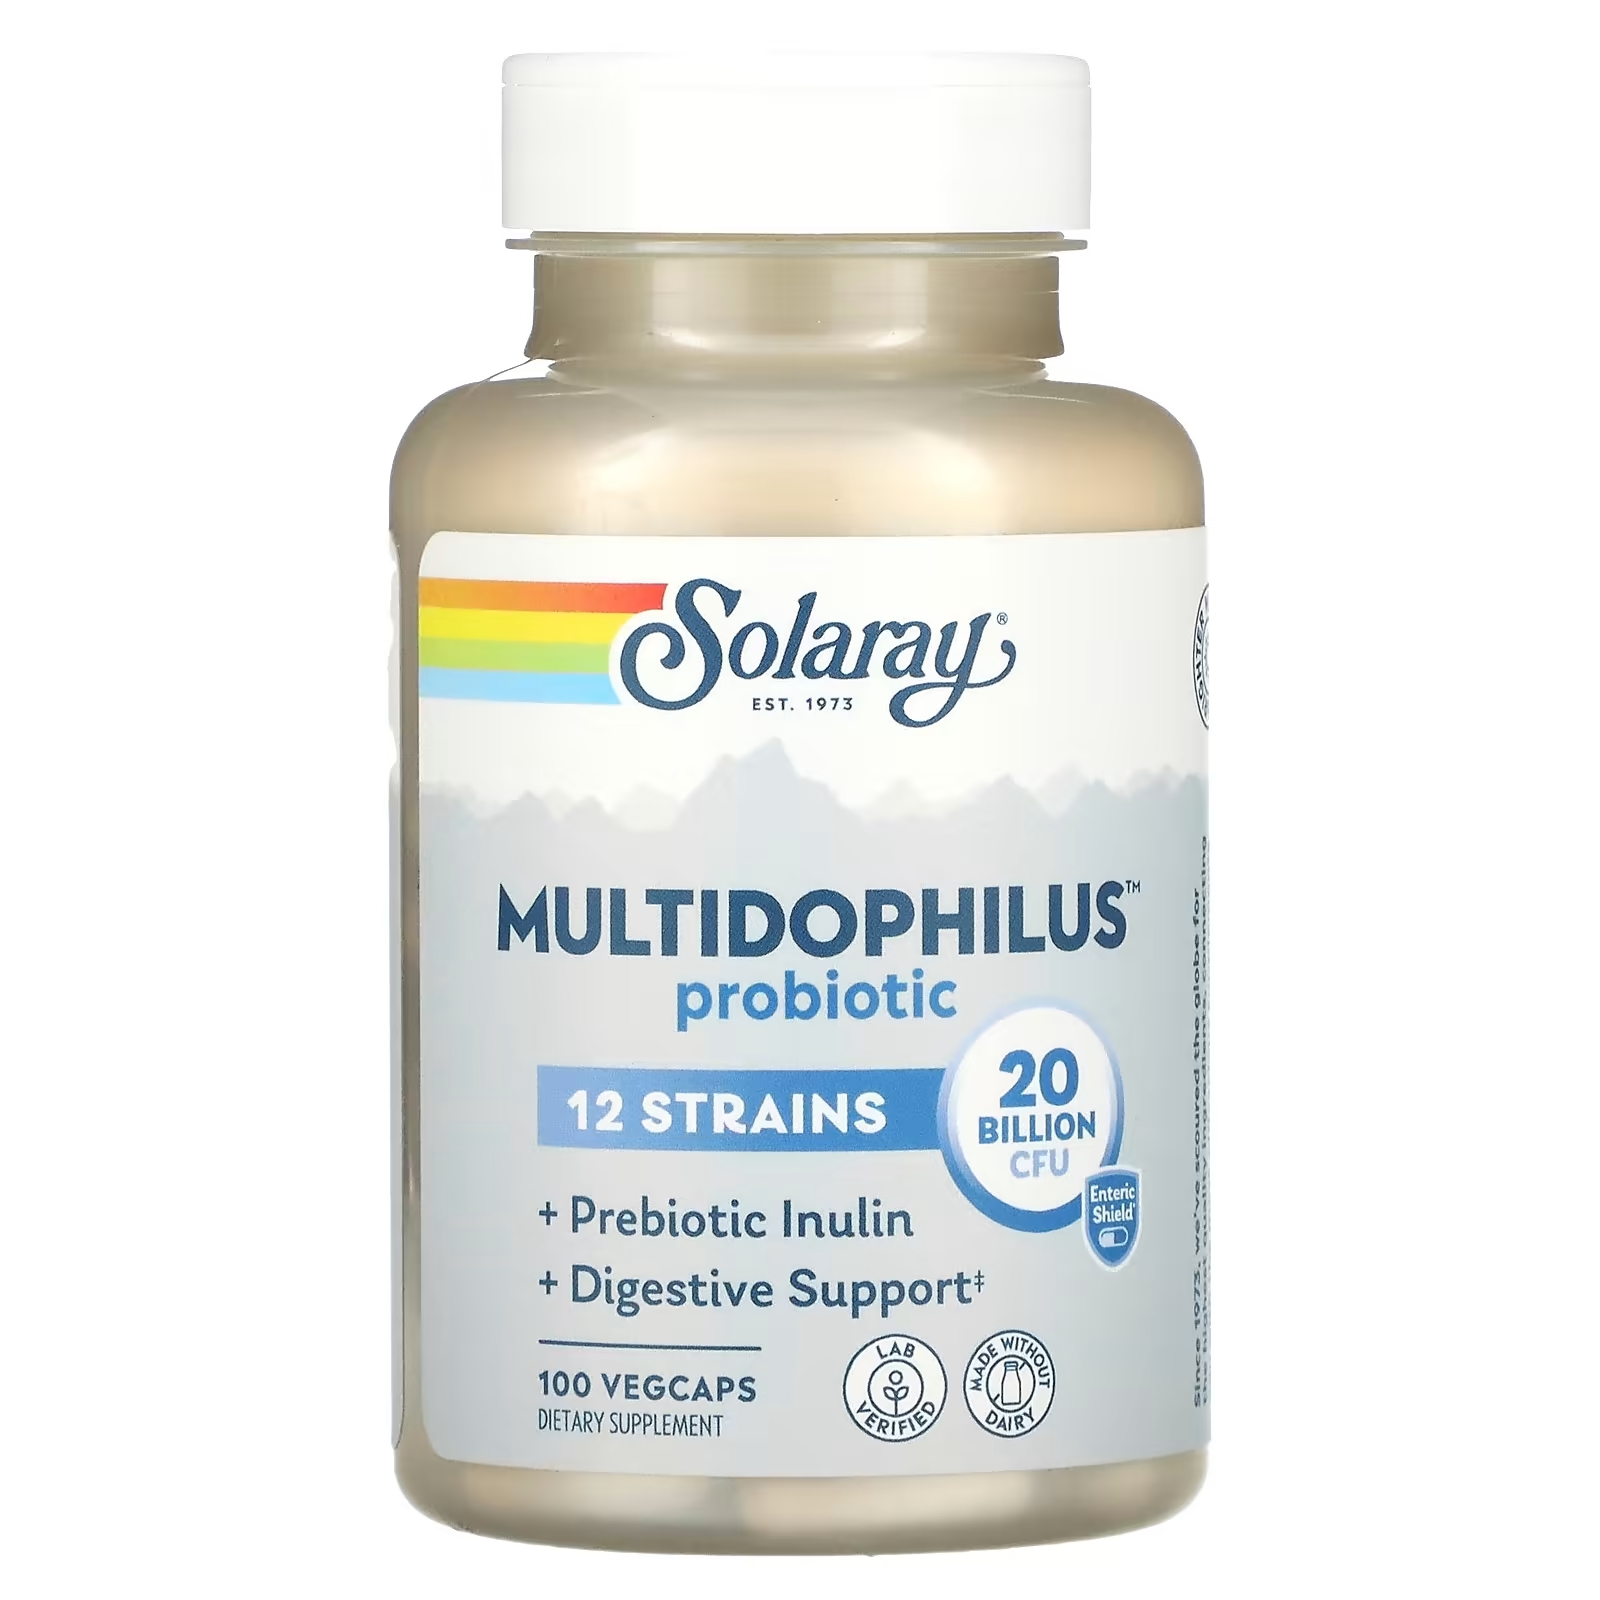 solaray multidophilus 12 штаммов пробиотических бактерий 20 млрд кое 100 капсул с кишечнорастворимой оболочкой Solaray Multidophilus Probiotic пробиотик 20 млрд КОЕ, 100 вегетарианских капсул VegCaps